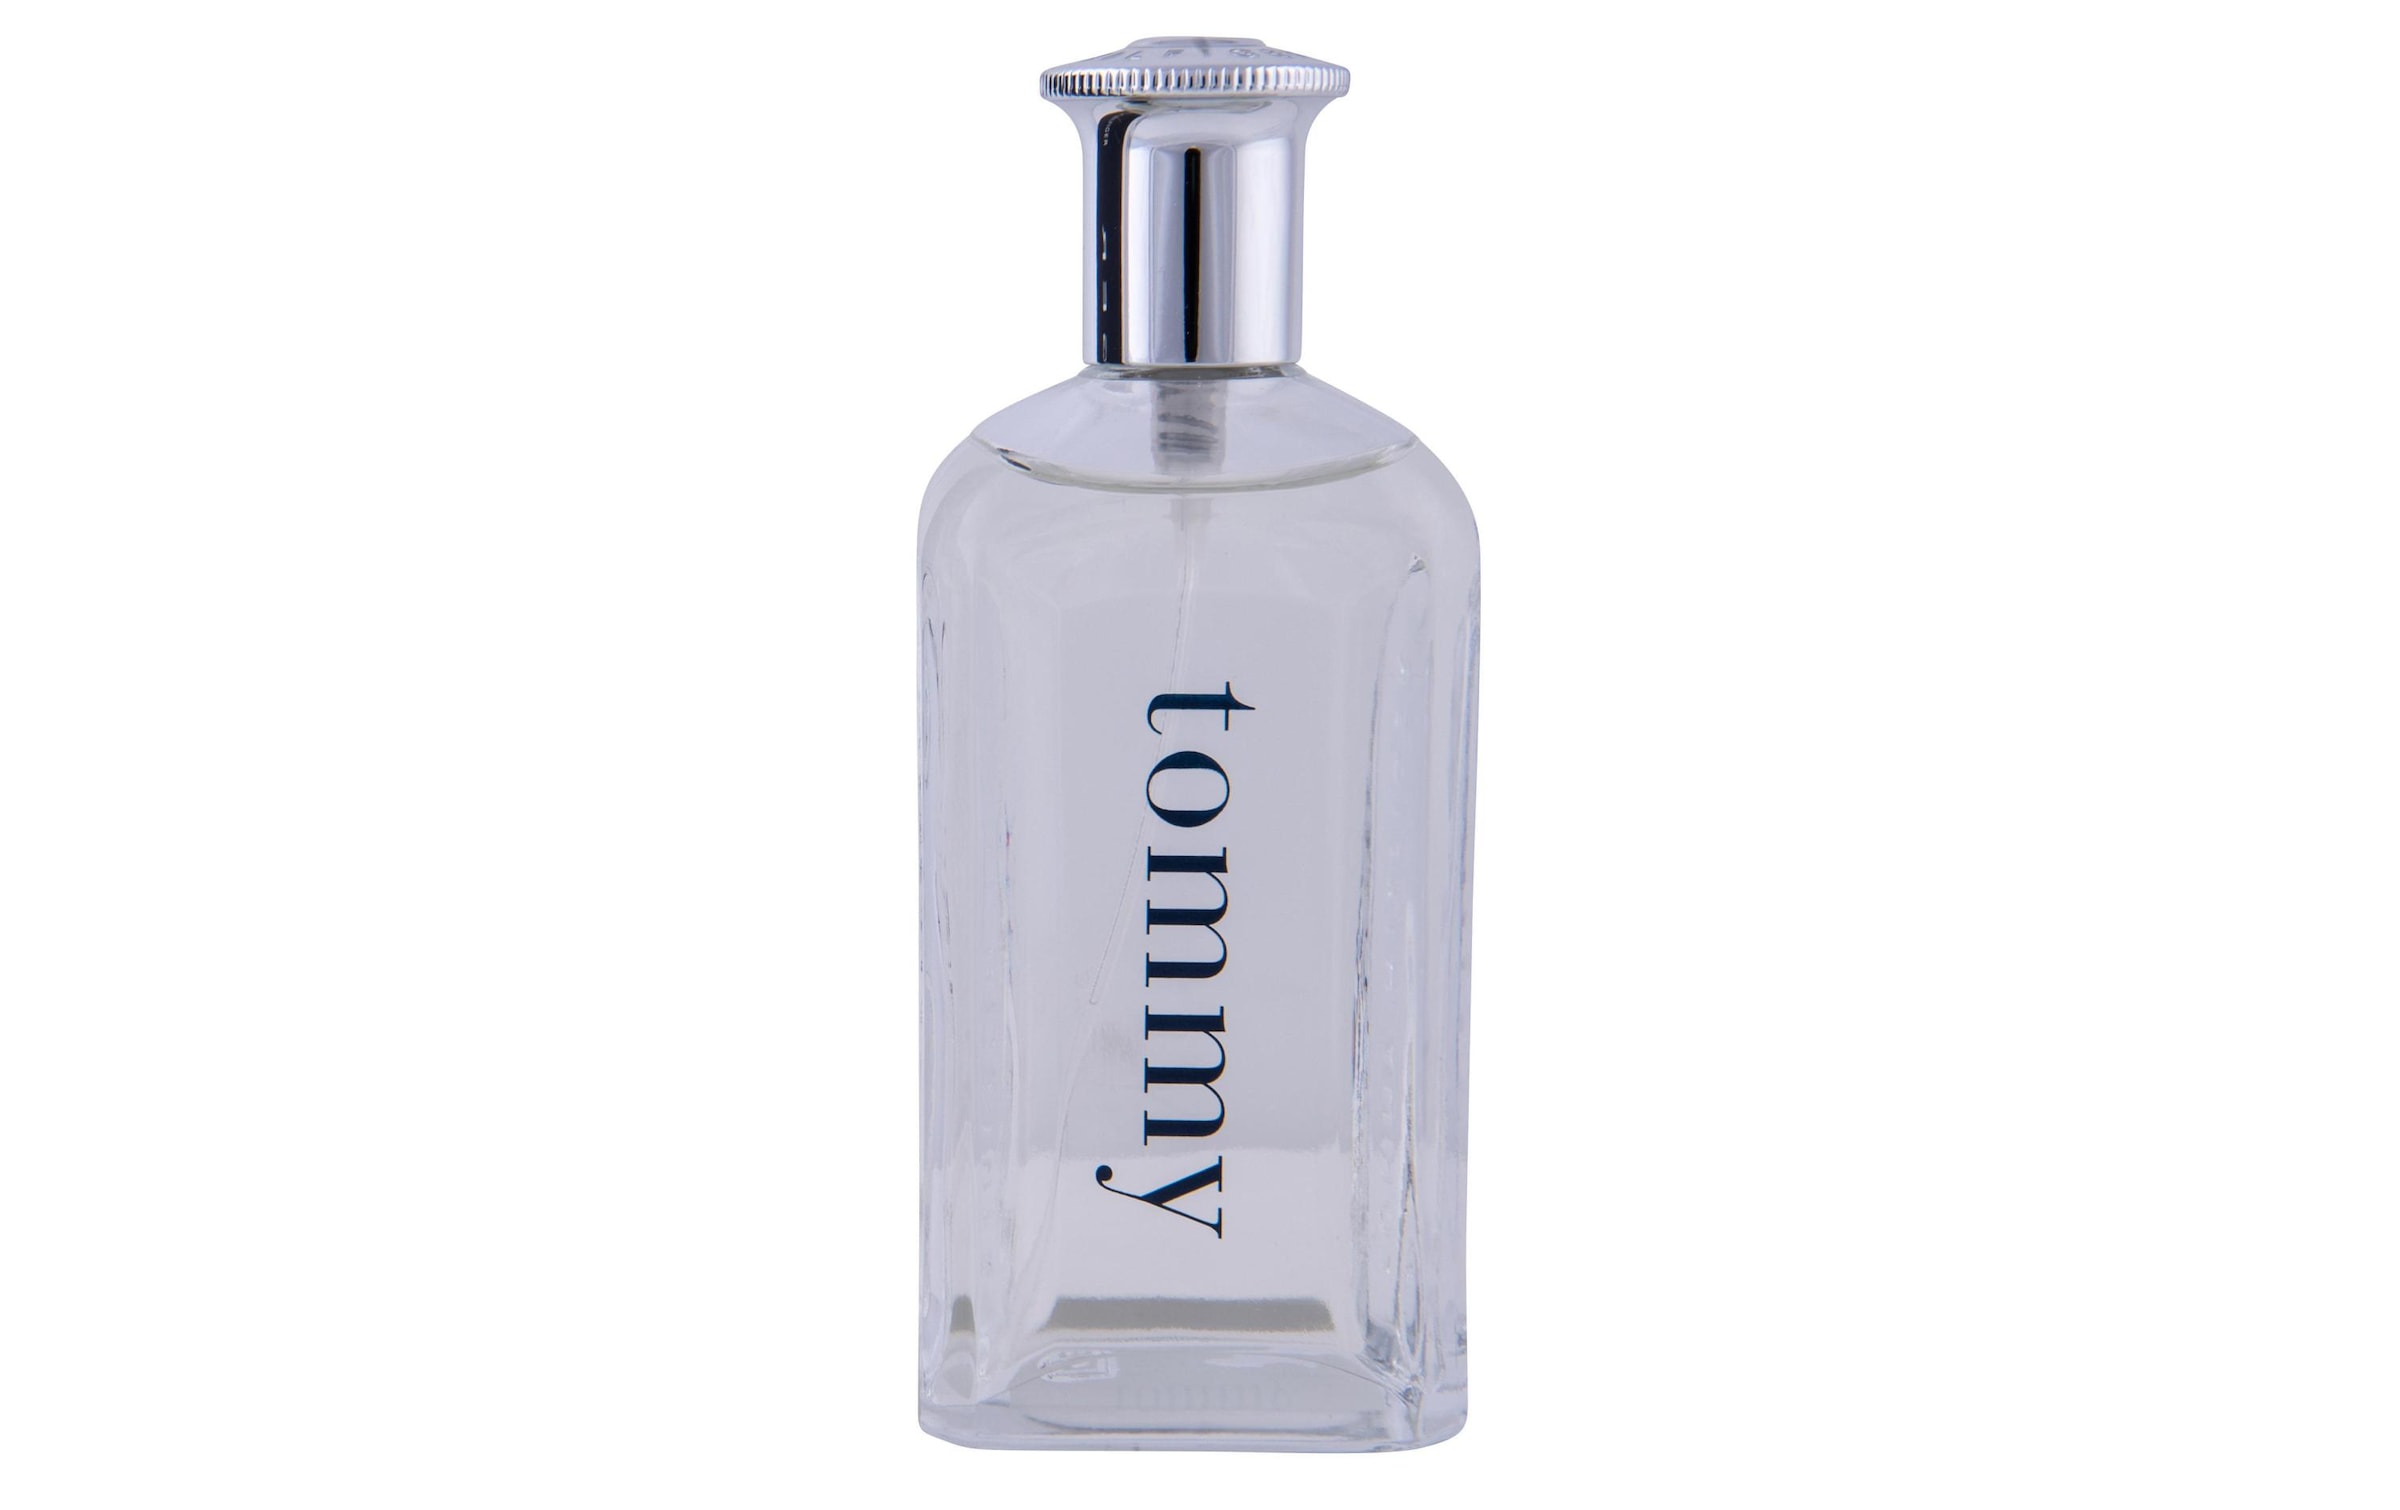 Tommy Hilfiger Eau de Parfum »Tommy 100 ml«